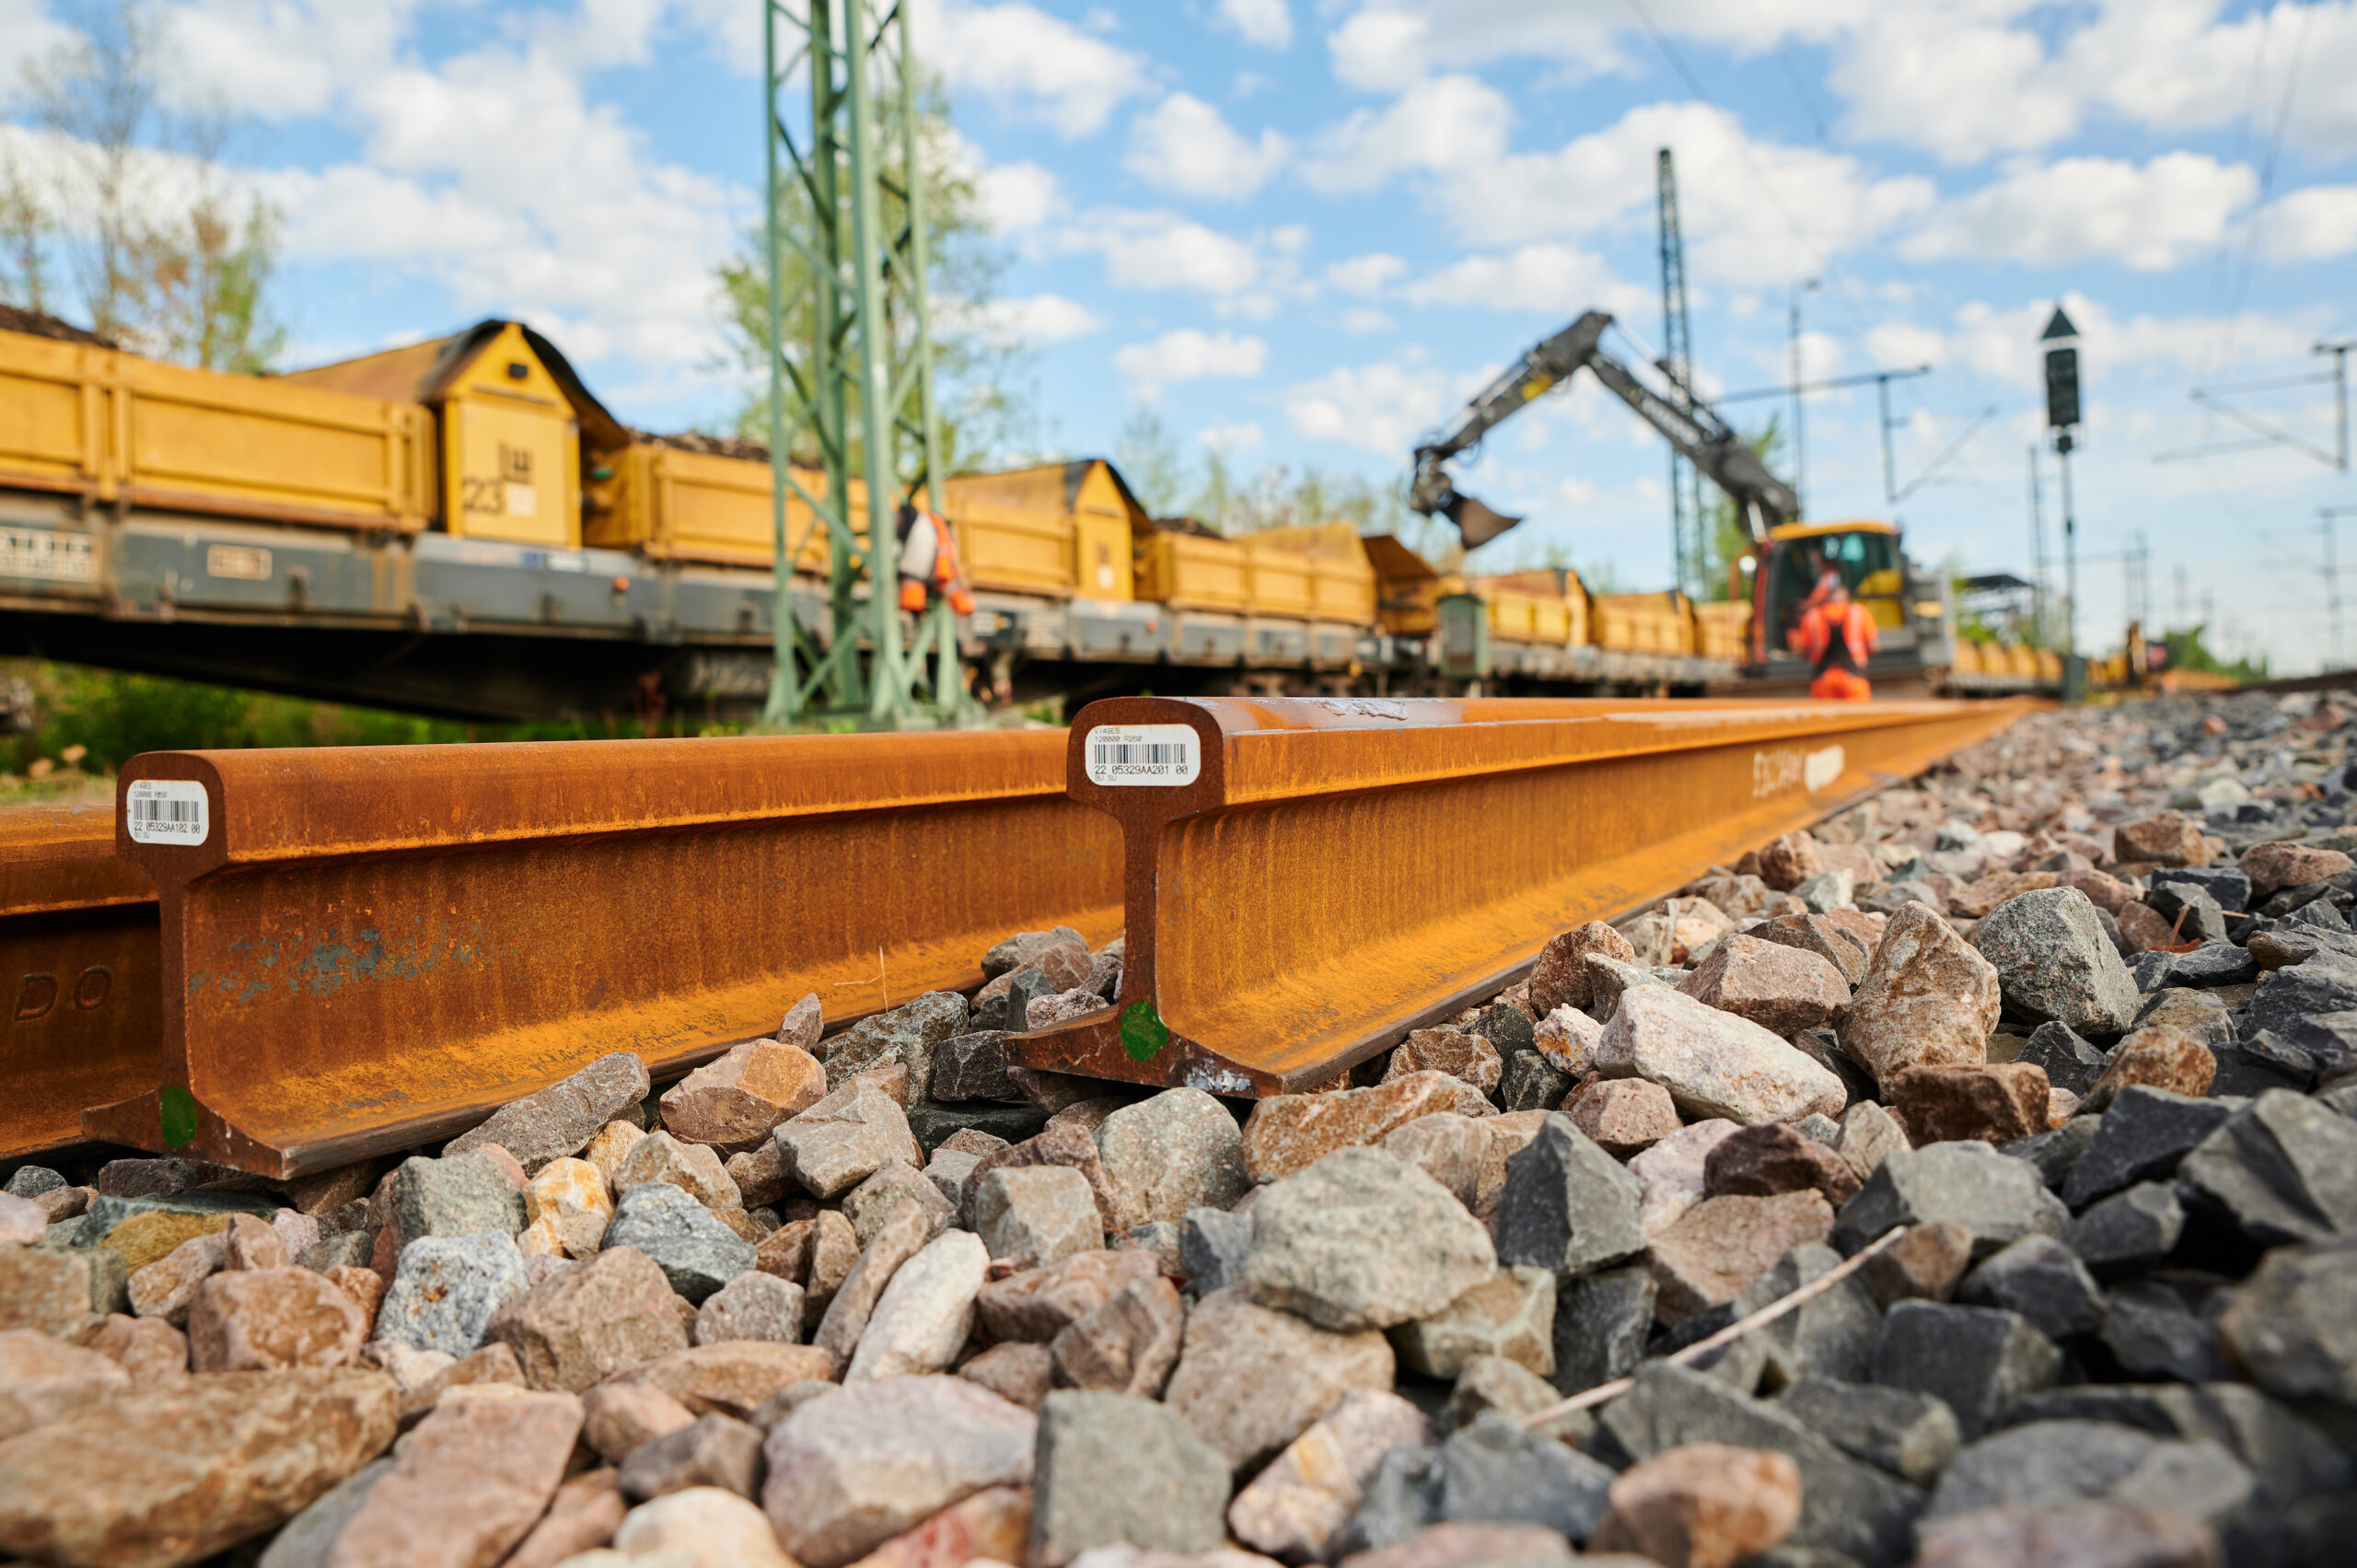 Track construction work on the Riedbahn near Riedstadt - Goddelau